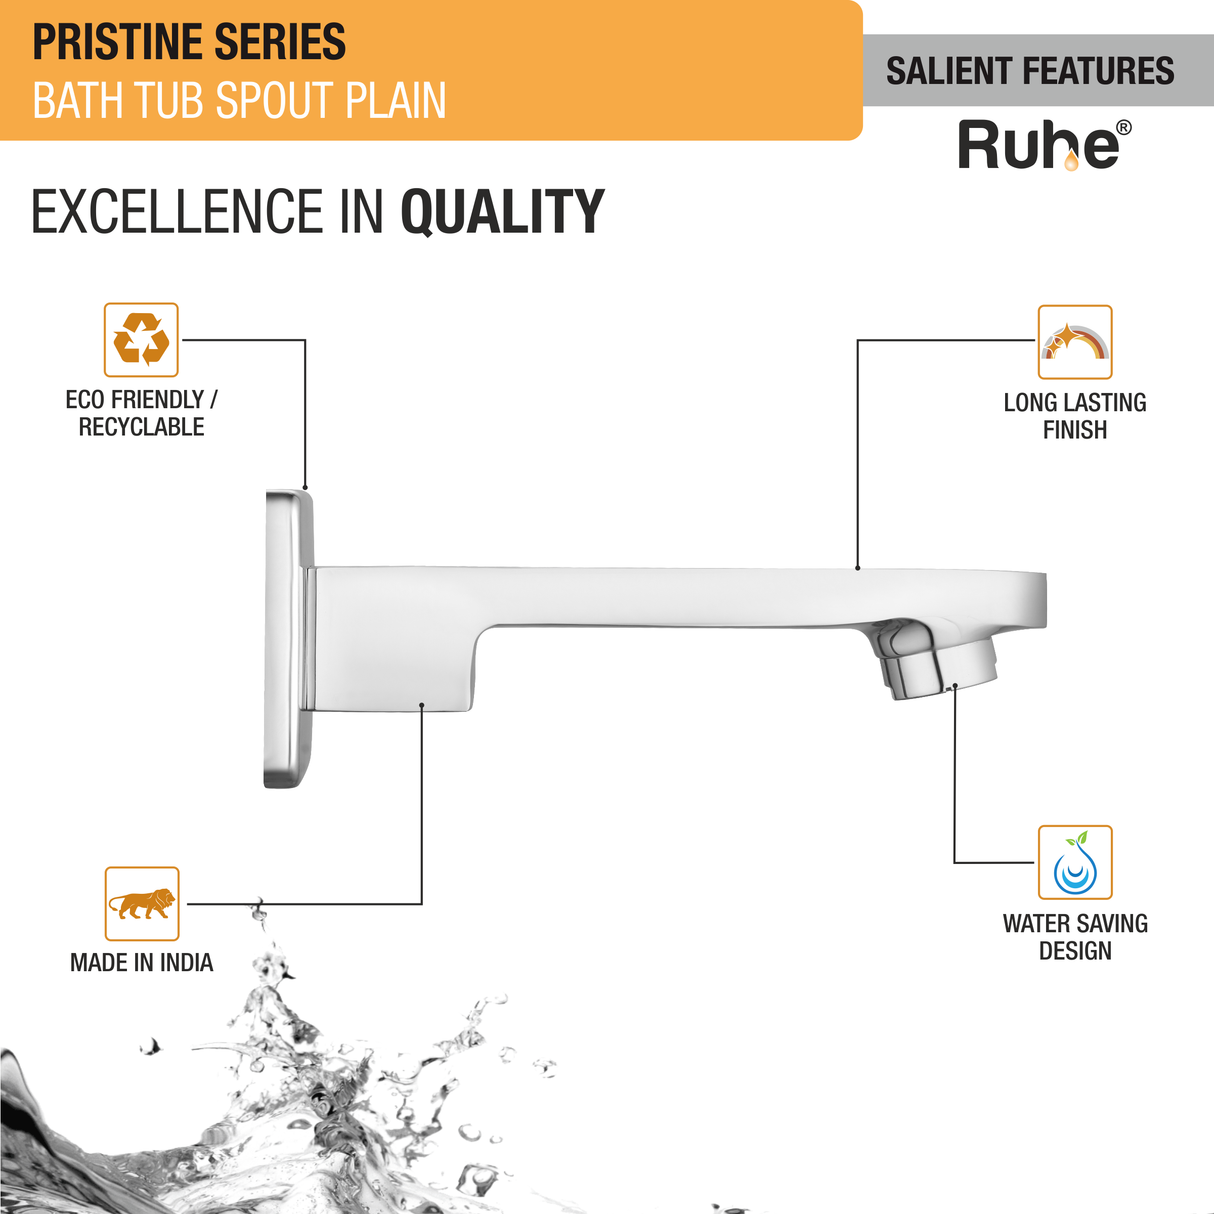 Pristine BathTub Plain Spout Brass Faucet features